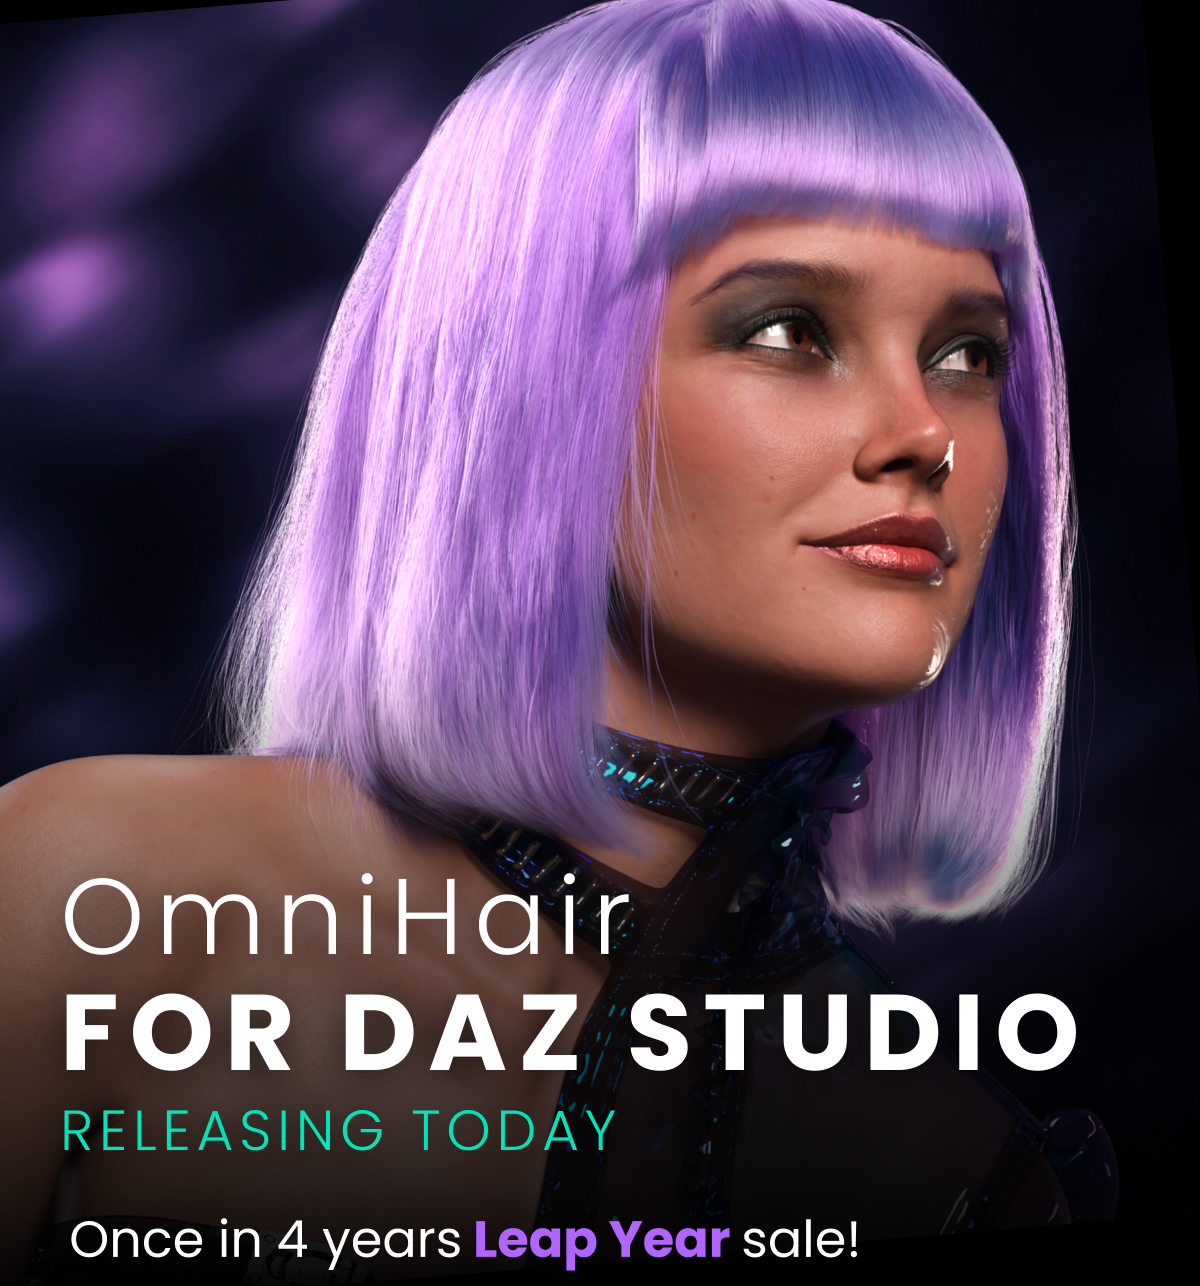 OmniHair for Daz Studio Releasing Today